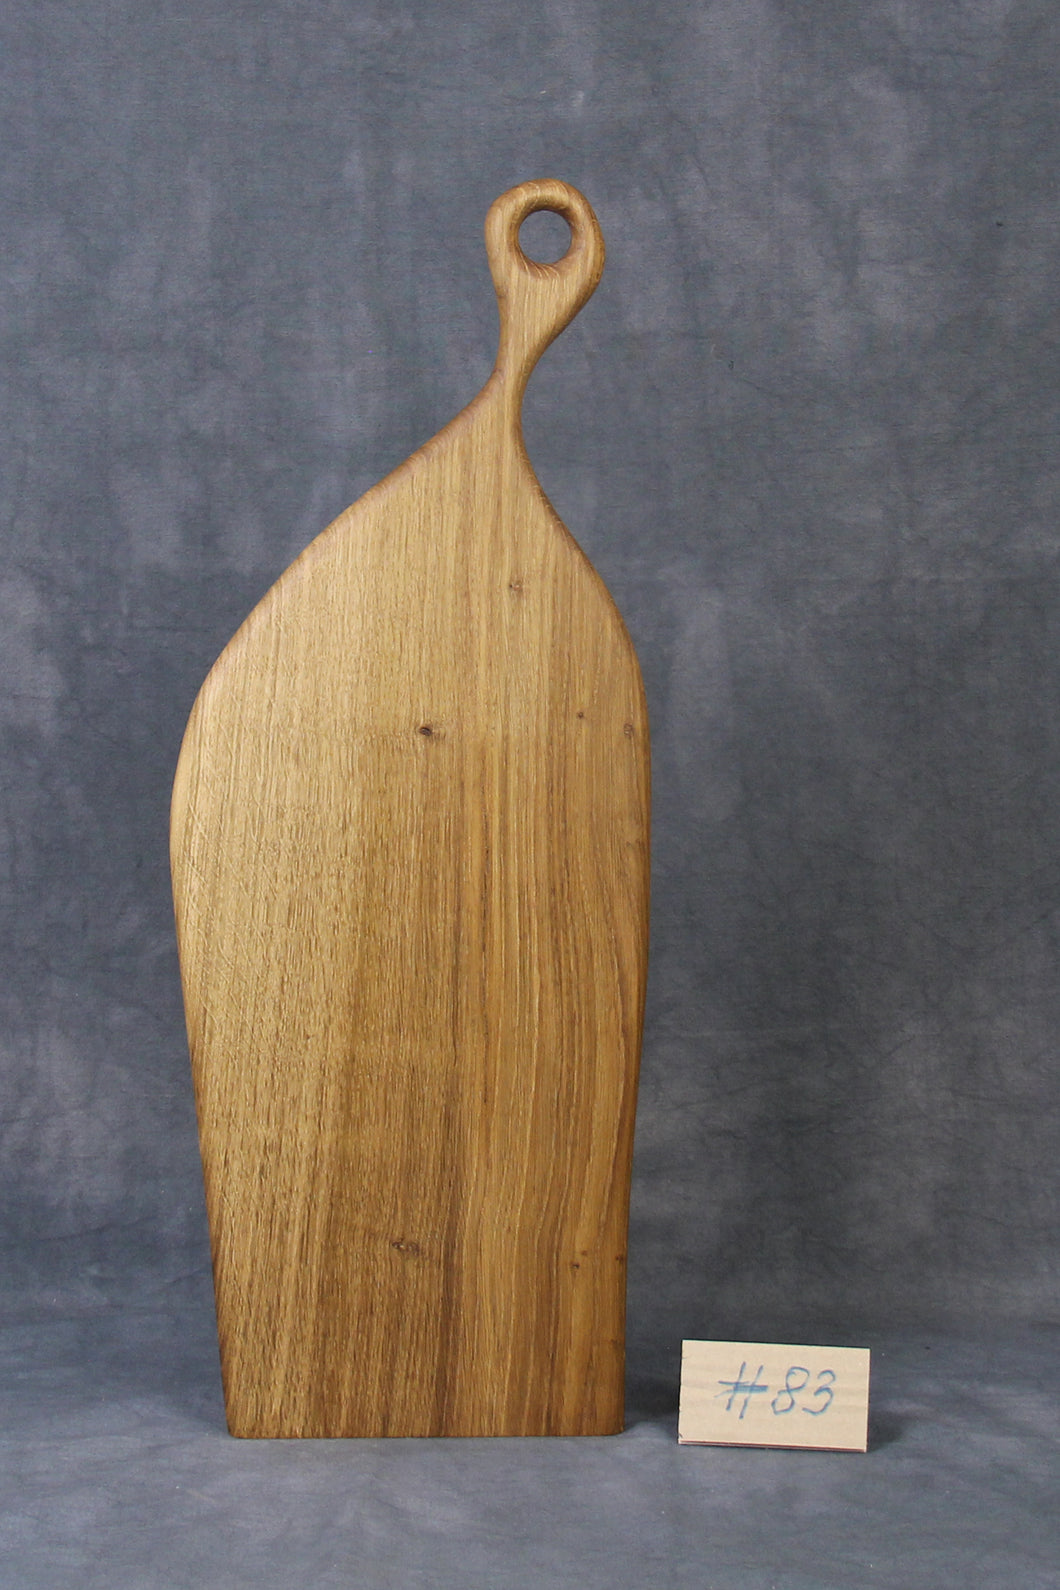 Servierbrett, Schneidebrett, Cuttingboard, Charcuterie Board. No. 83 - ca. 58 cm. Aus einem Stück Eiche - handgefertigt.